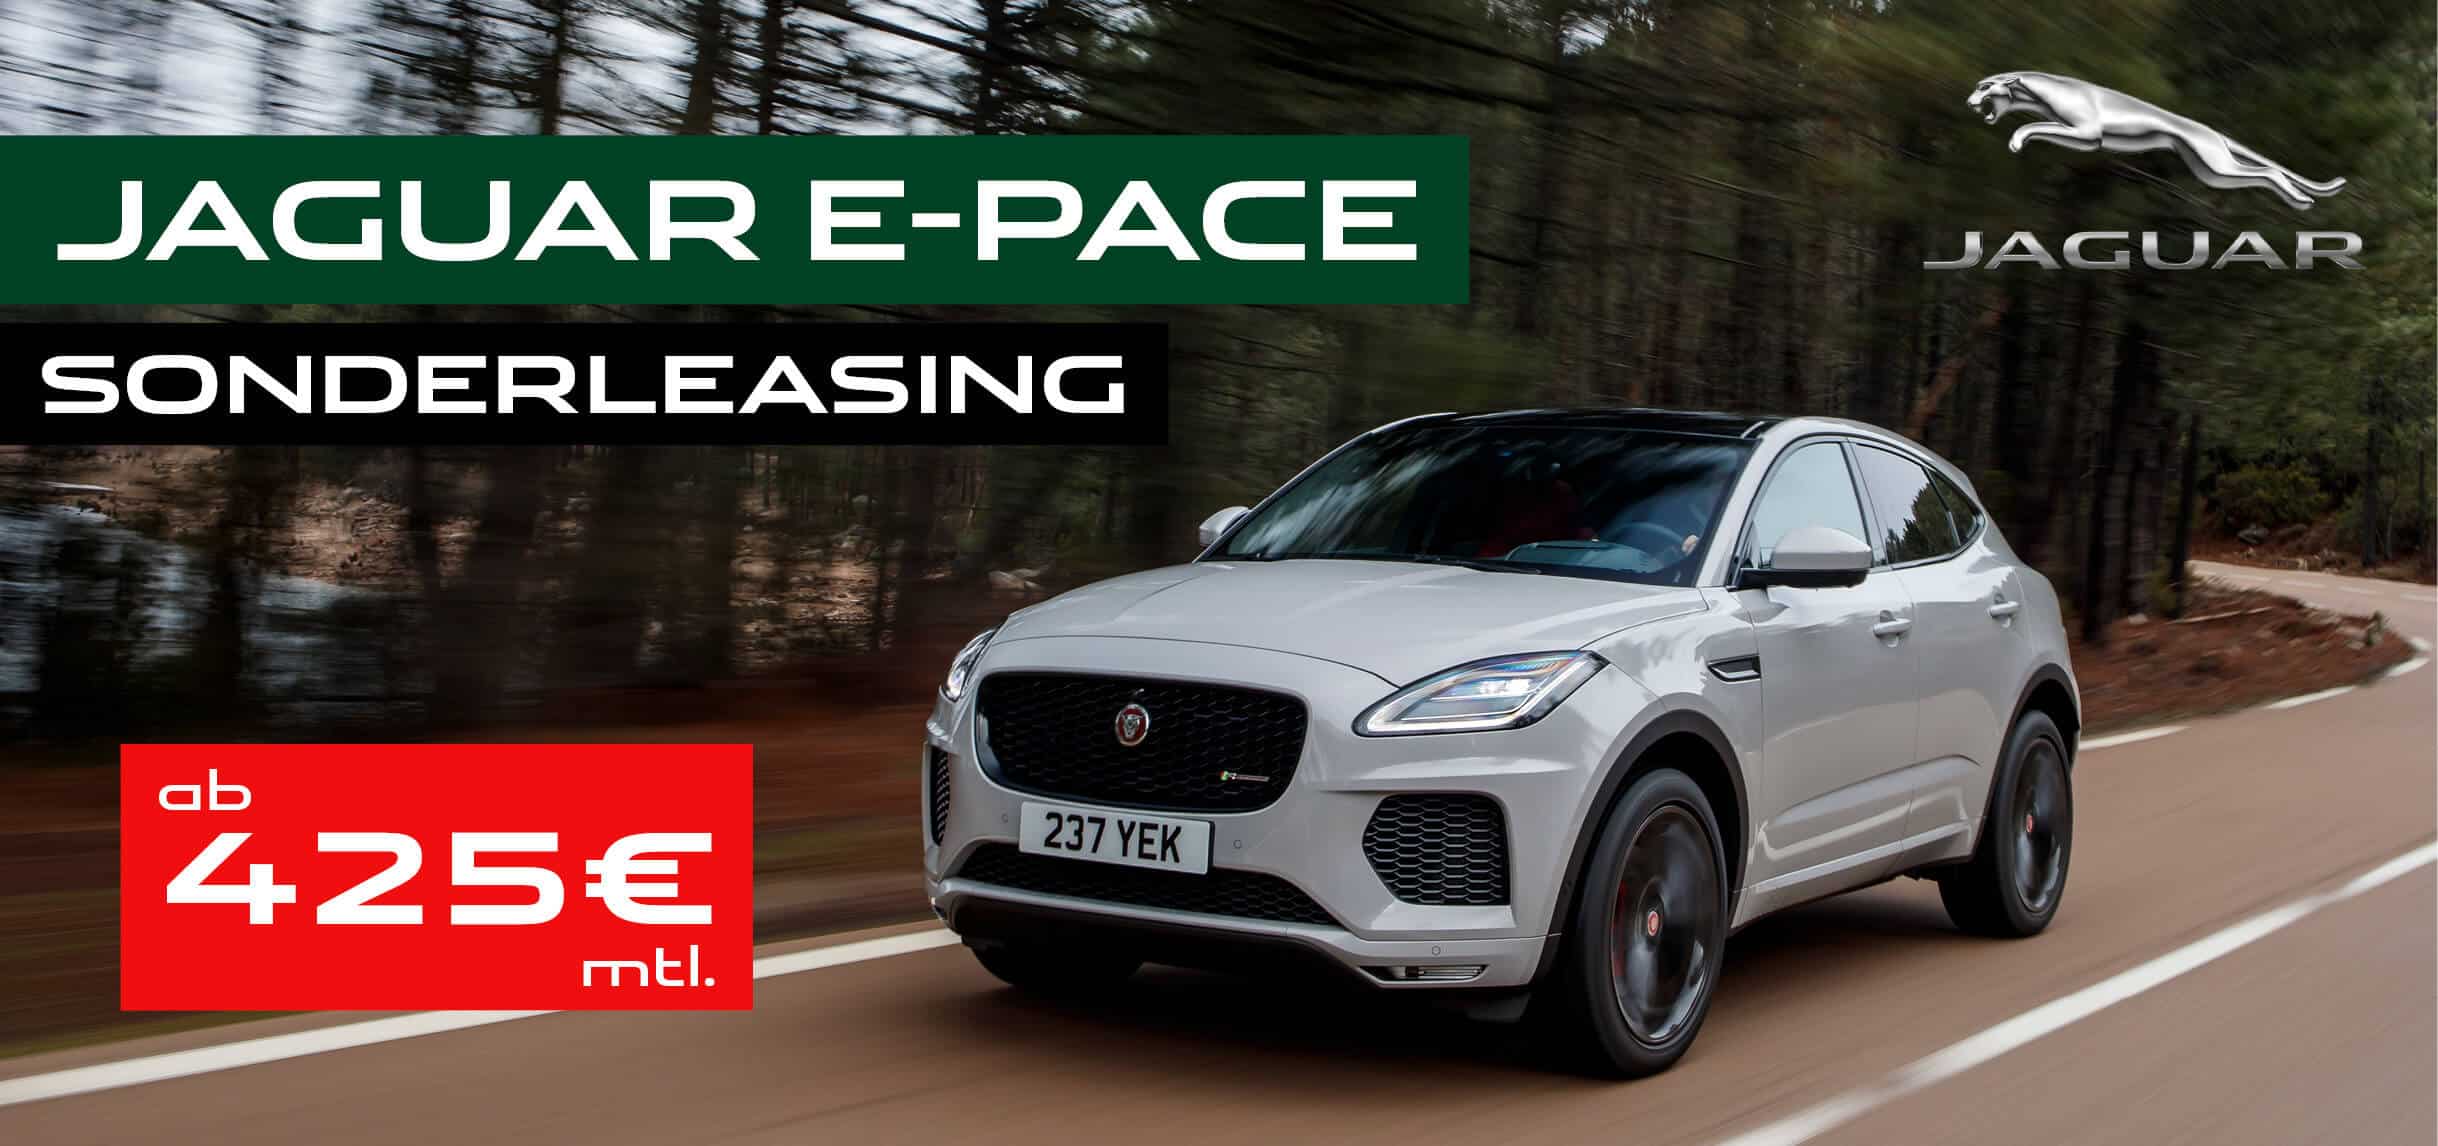 Jaguar E-Pace Sonderleasing-Aktion